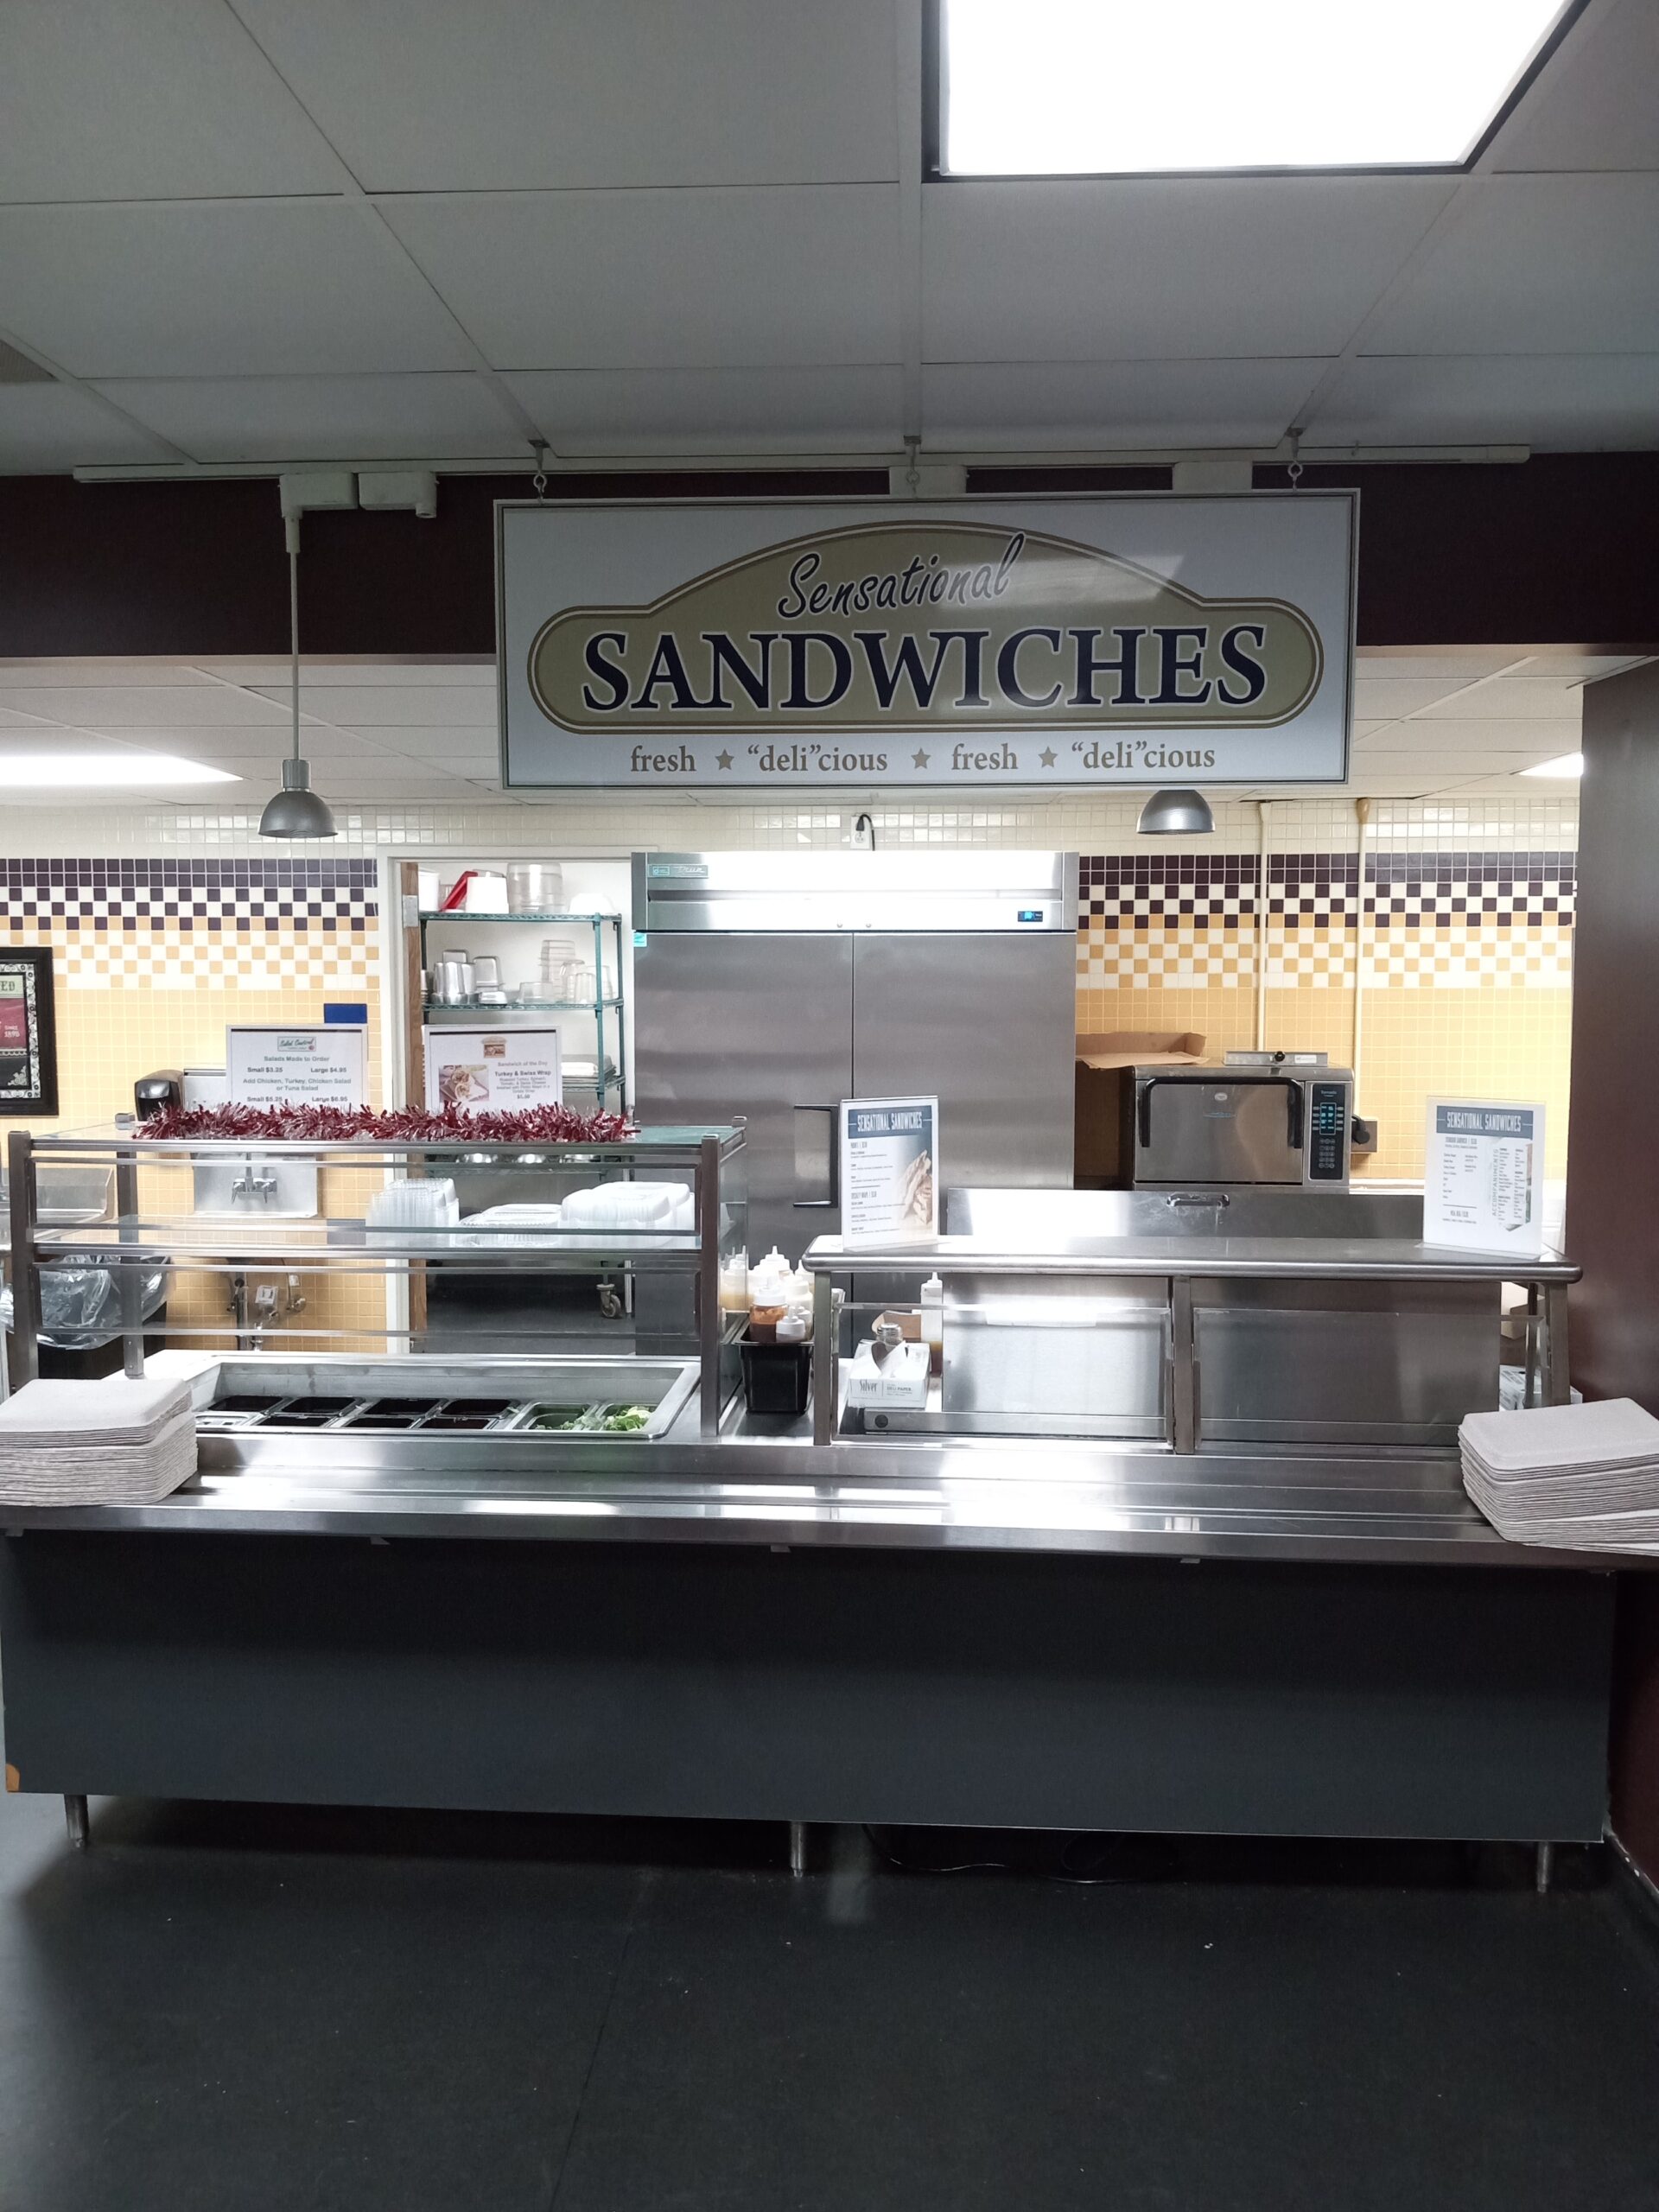 Sandwich Kiosk